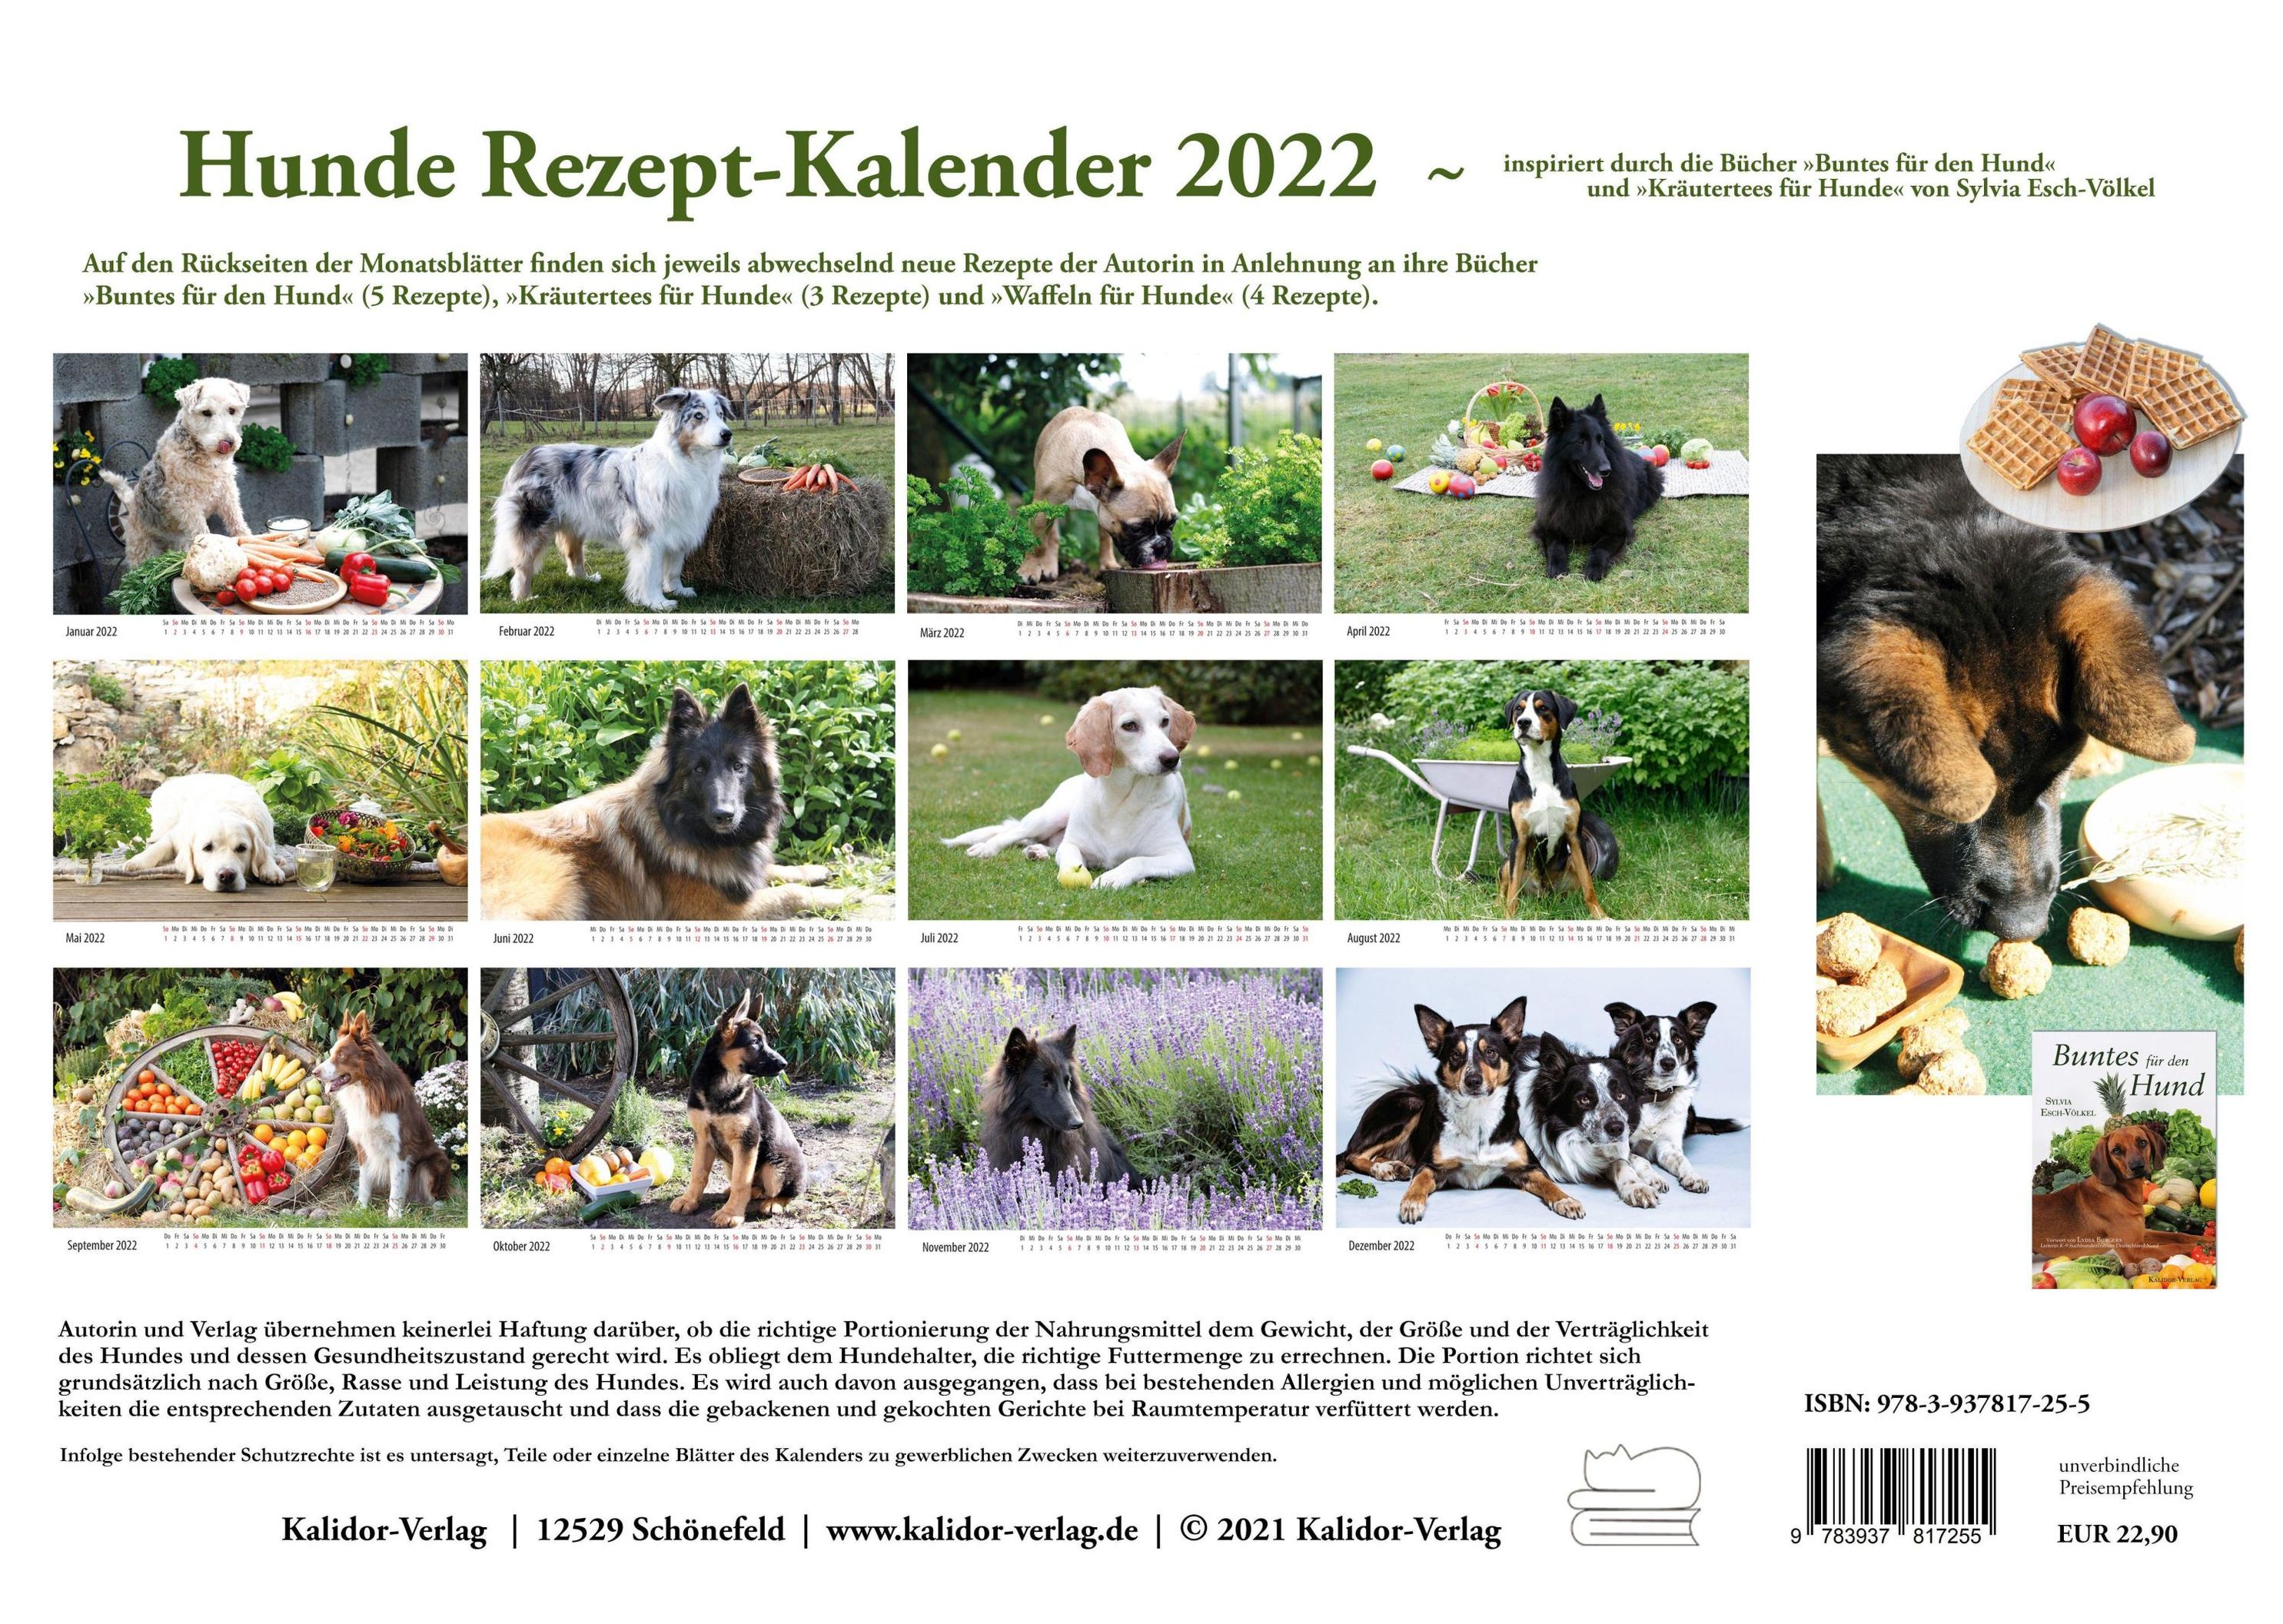 Esch-Völkel, S: Hunde Rezept-Kalender 2022 - Kalender bestellen